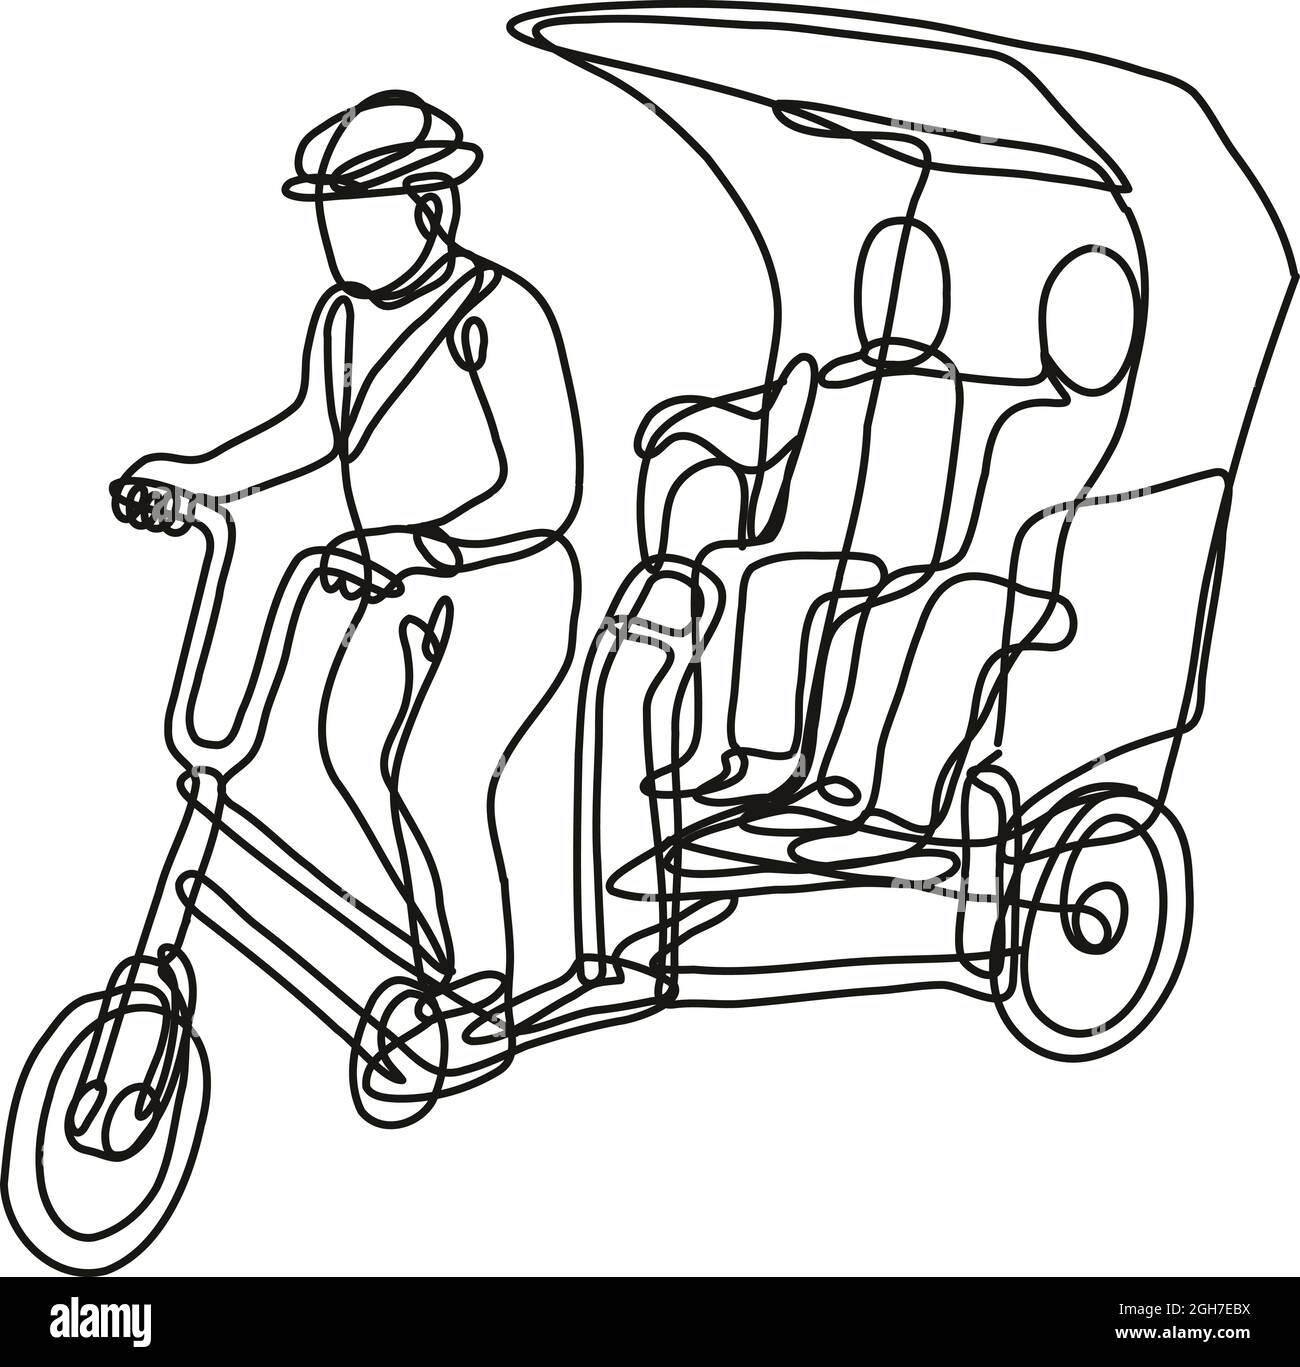 Dessin en ligne continue illustration d'un toktok tok tok ou tricycle à 3 roues fait en ligne simple ou en forme de doodle en noir et blanc sur bac isolé Illustration de Vecteur